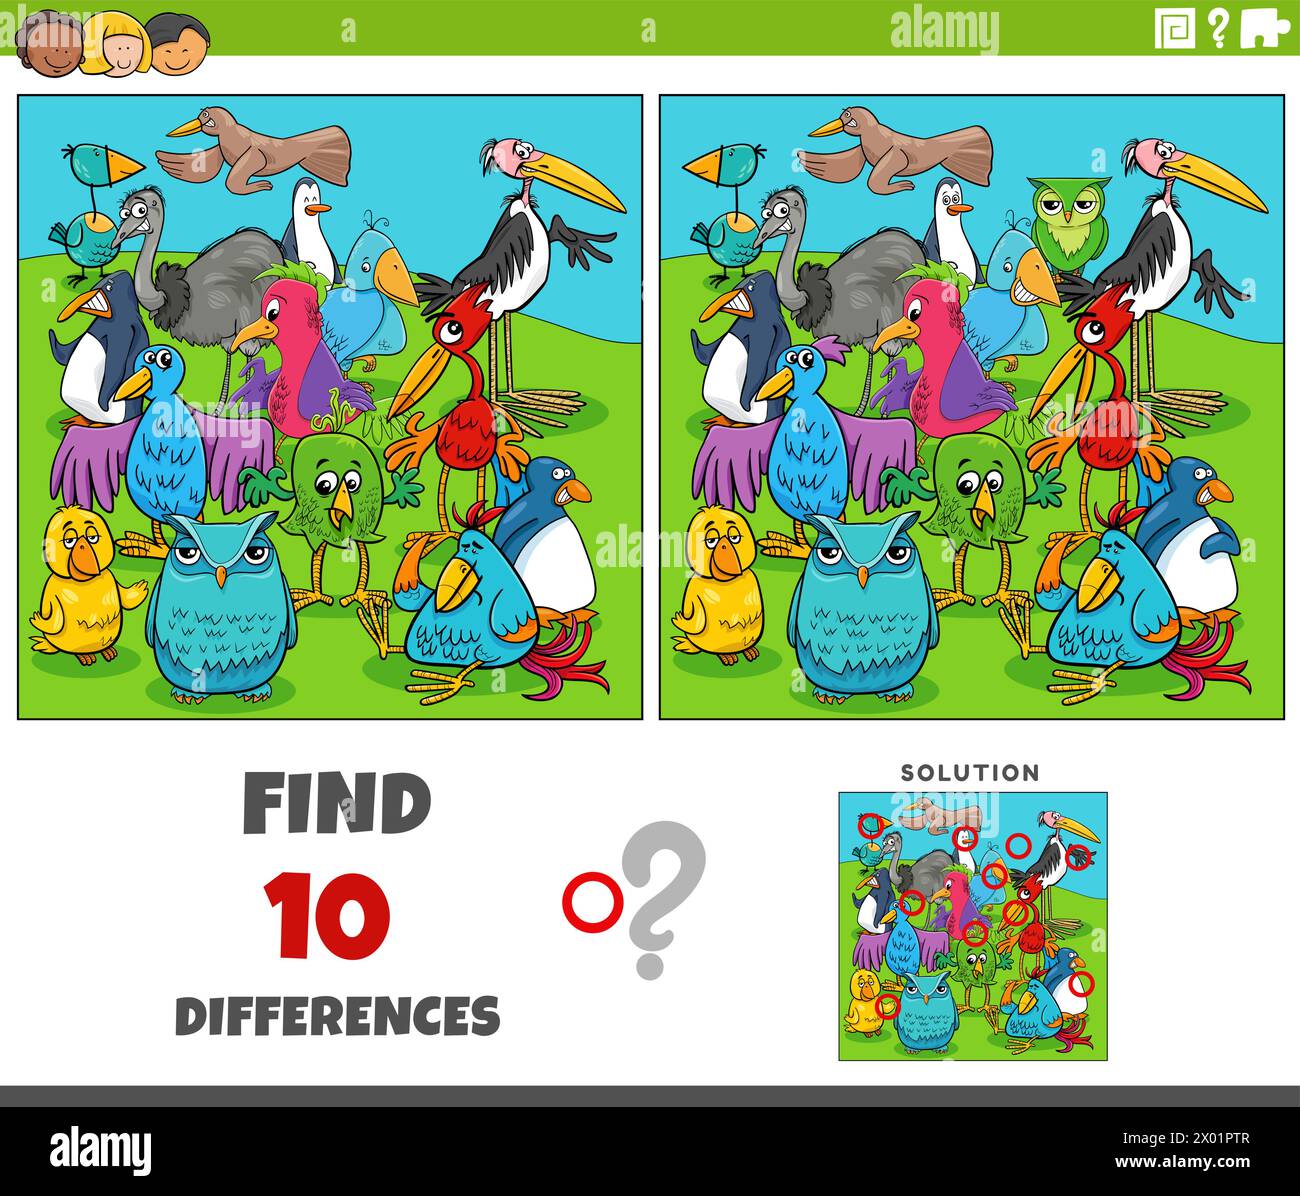 Illustration de dessin animé de trouver les différences entre les images activité éducative avec des personnages d'animaux d'oiseaux Illustration de Vecteur